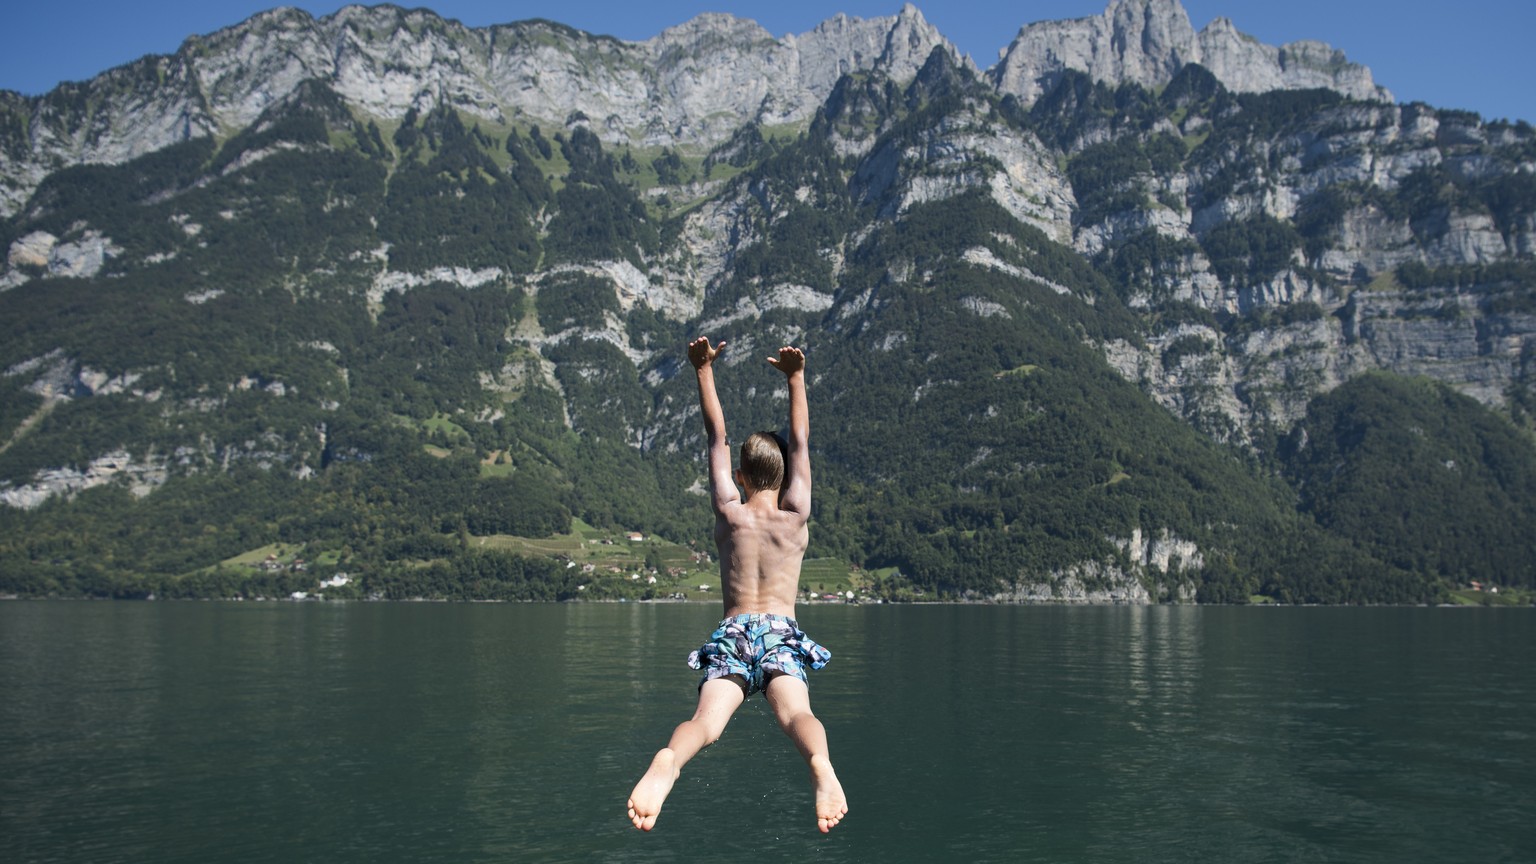 Jonas kuehlt sich ab mit einem Sprung ins Wasser, am Samstag, 27. August 2016, am Walensee in Murg. (KEYSTONE/Gian Ehrenzeller)

Jonas jumps in the water of the Walensee lake at Murg, Switzerland, Sat ...